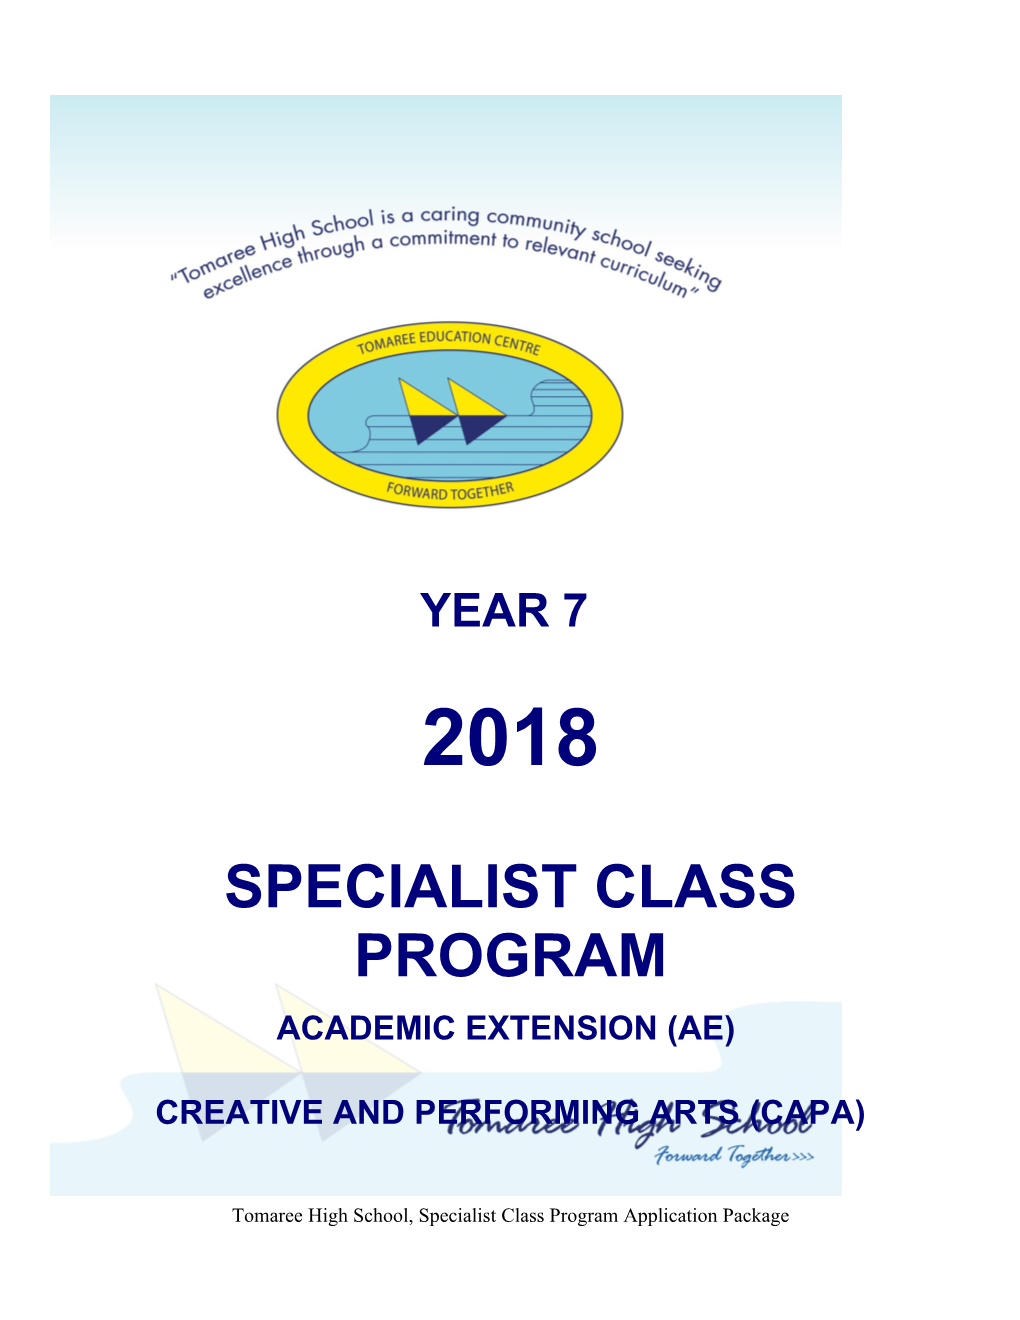 Specialist Class Program